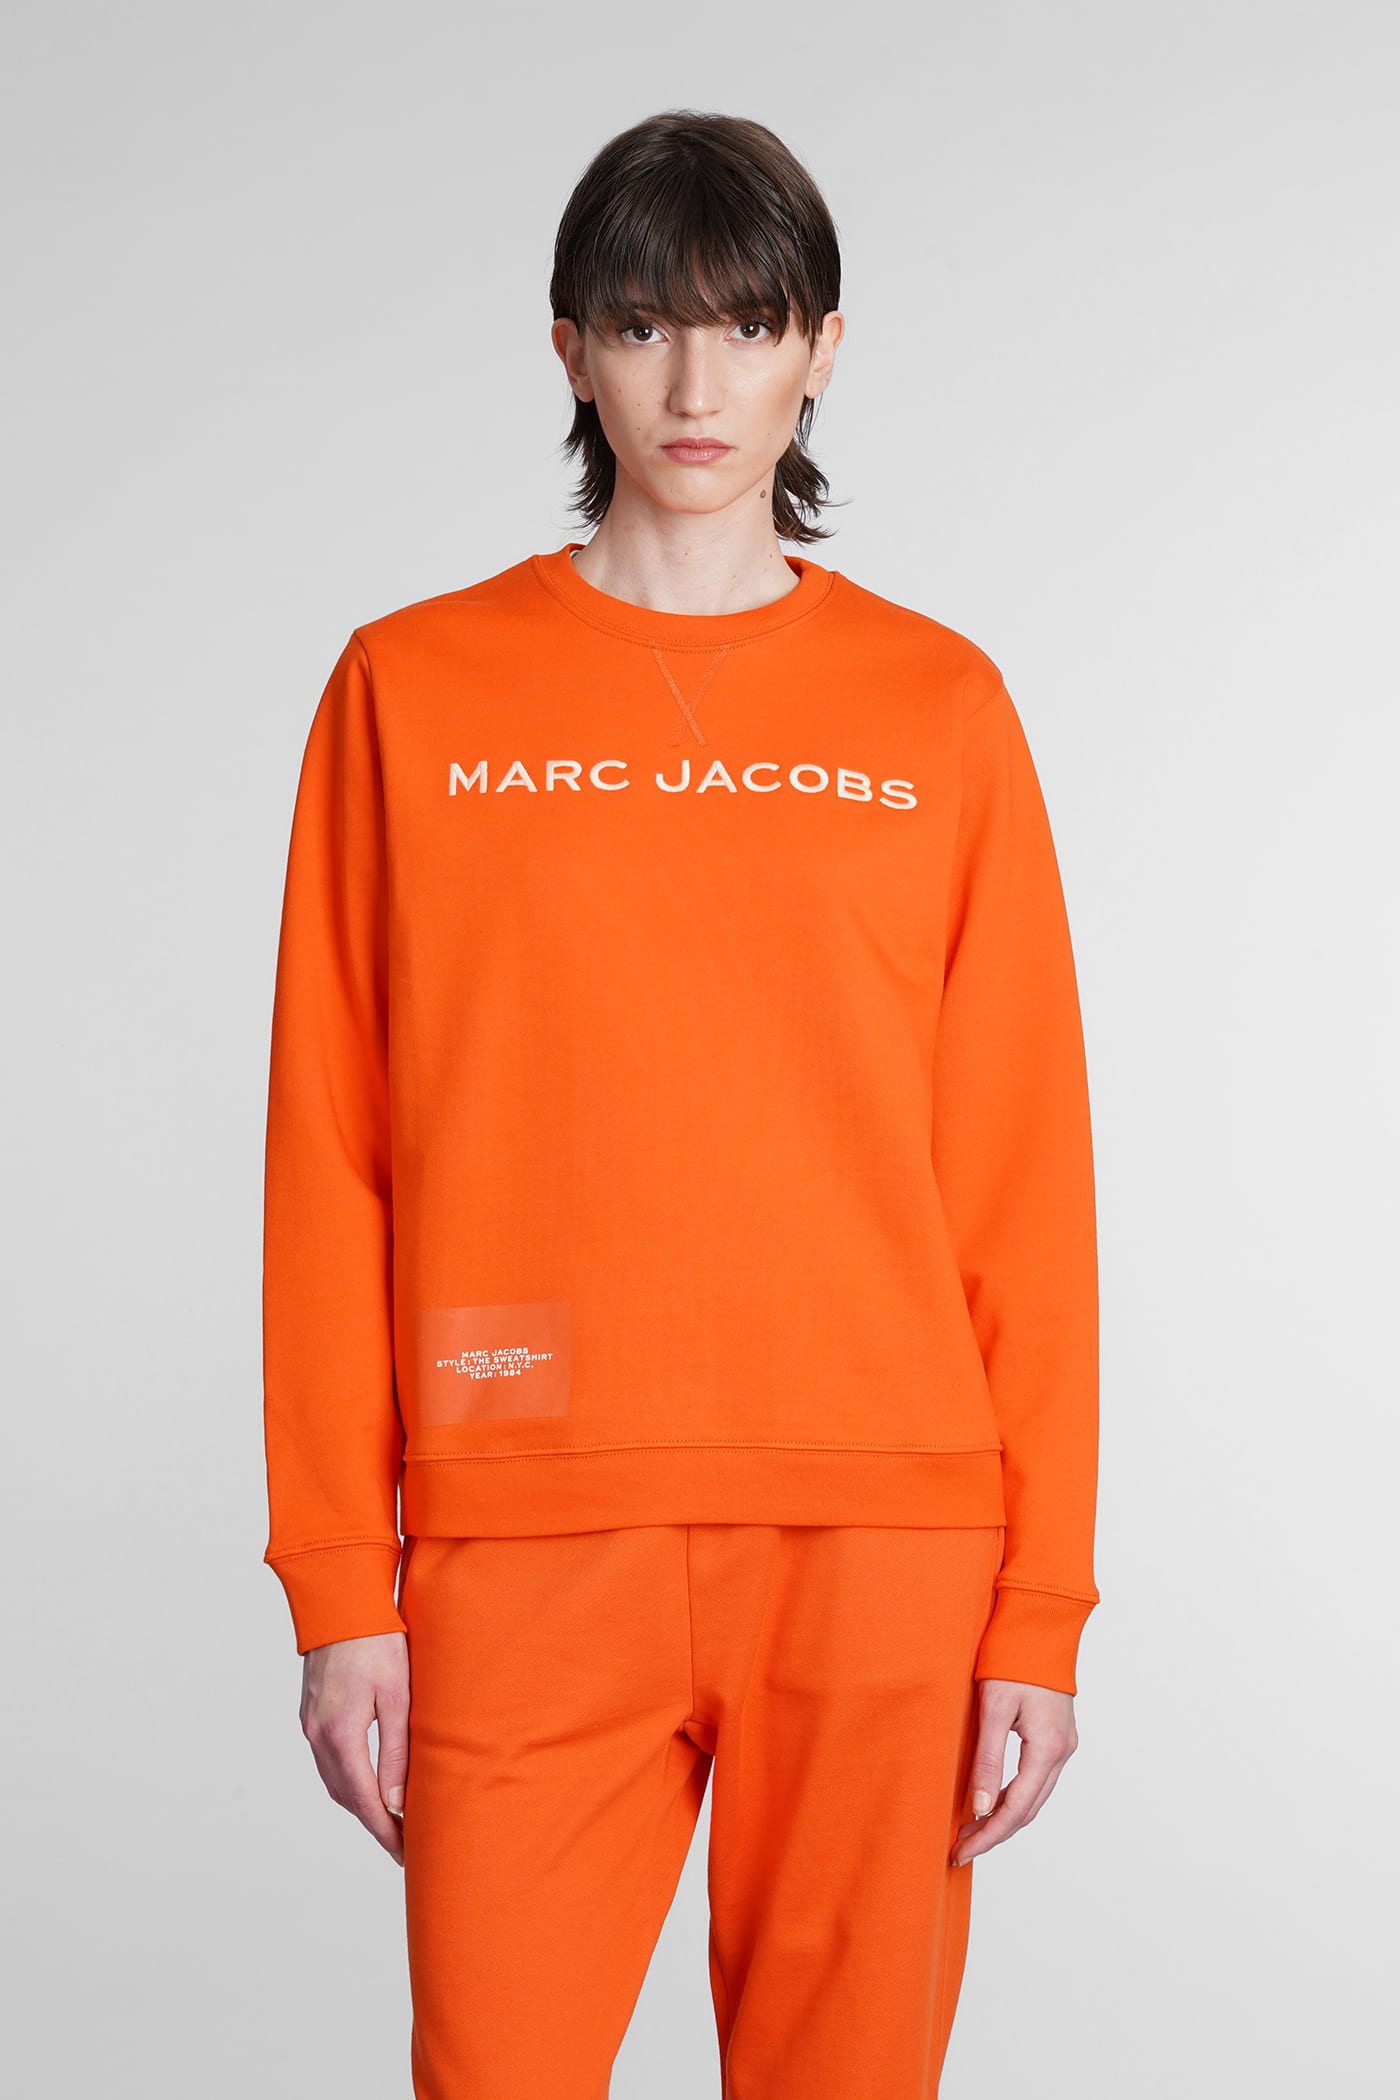 Marc Jacobs Sweatshirt In Orange Cotton